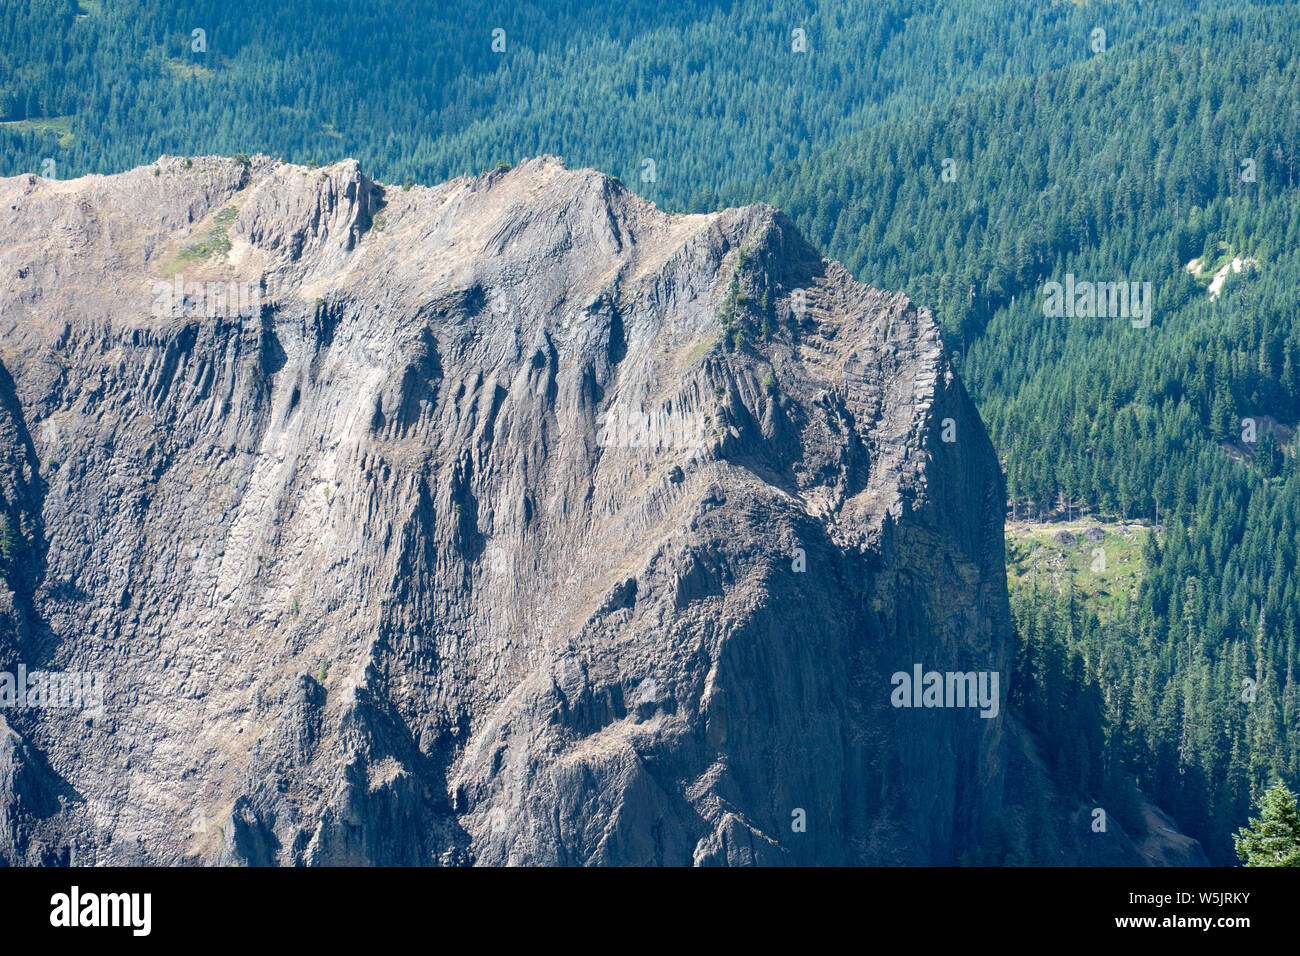 Monolithe de roche ignée intrusive --1200 pieds de haut Wolf Rock dans l'ouest de l'Oregon Cascades, USA Banque D'Images